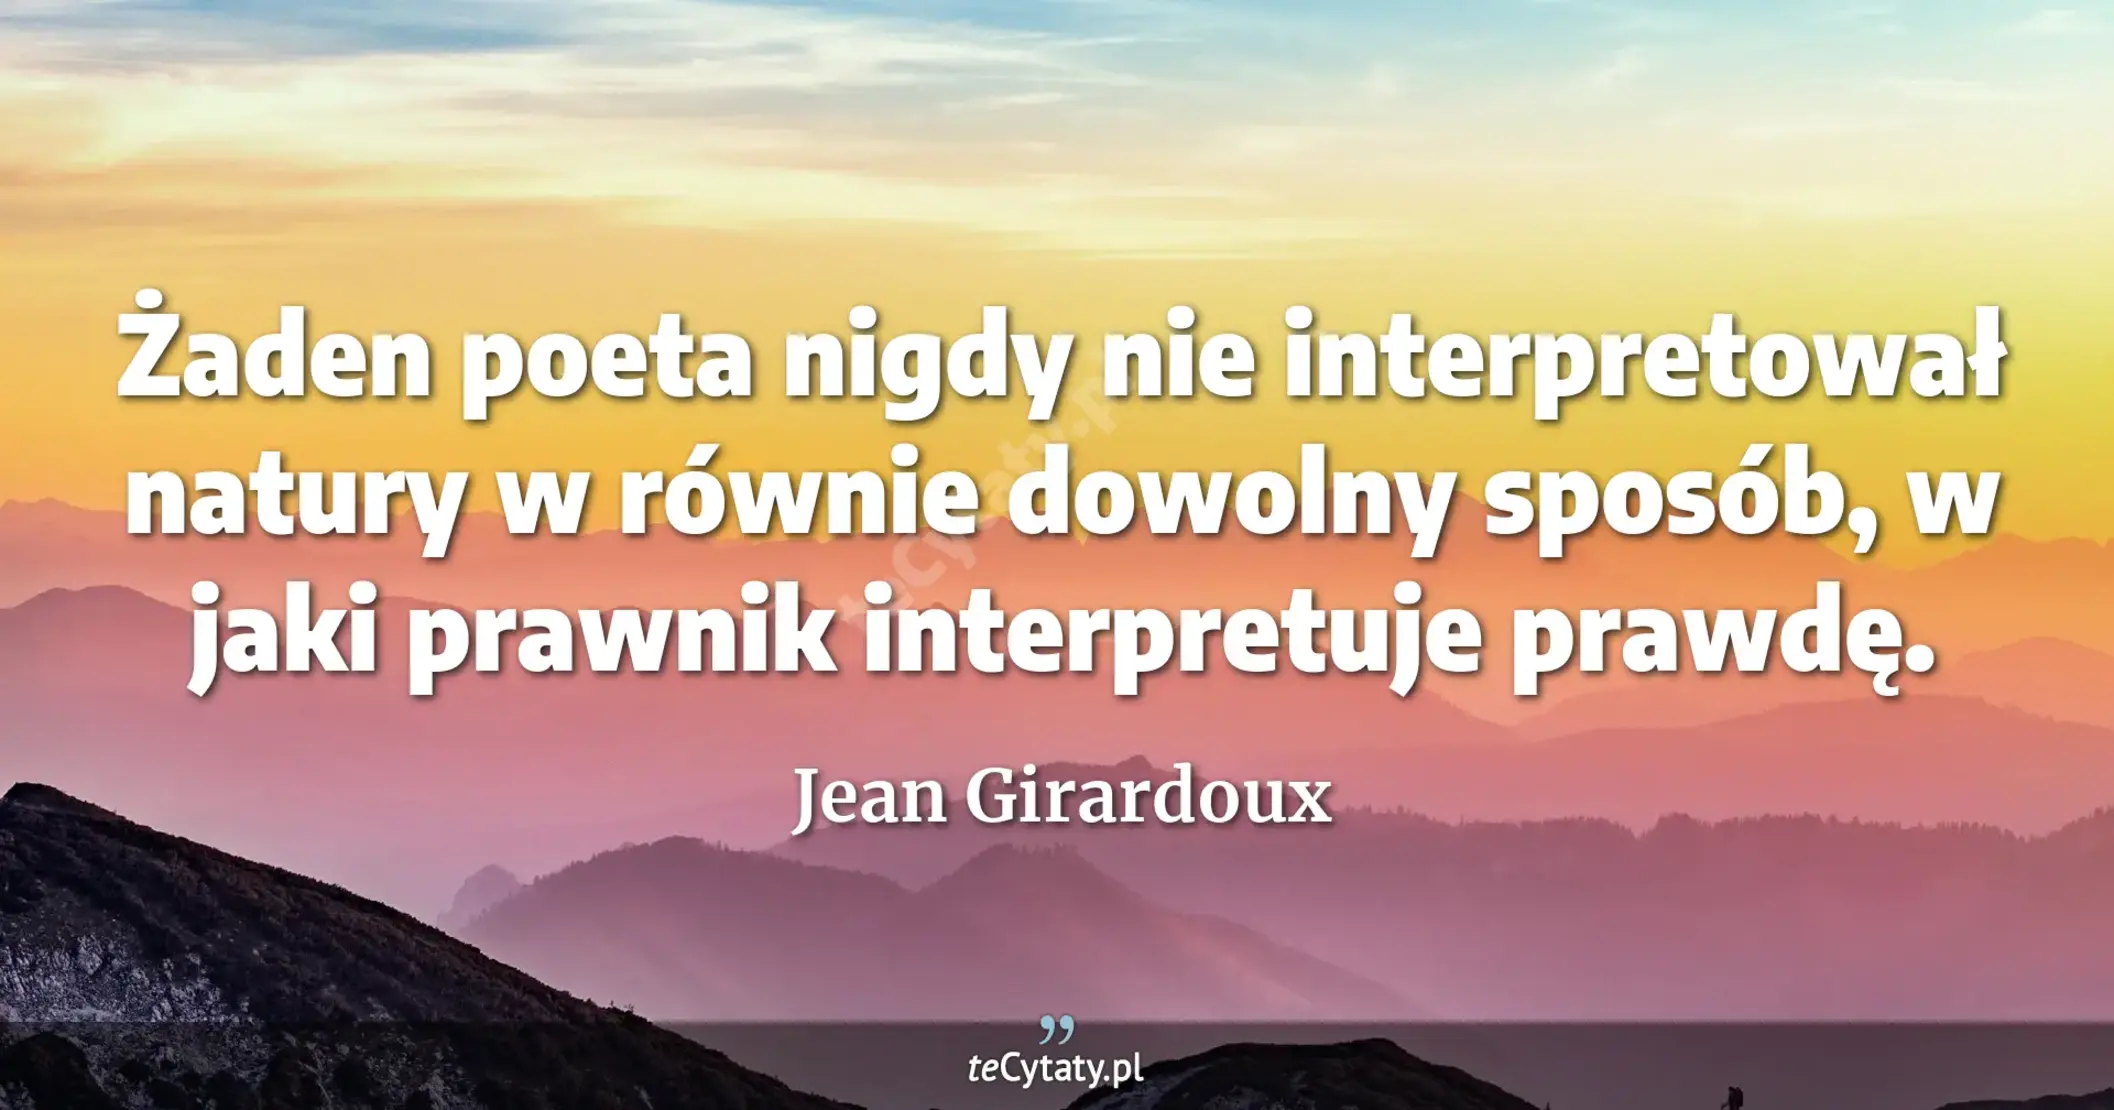 Żaden poeta nigdy nie interpretował natury w równie dowolny sposób, w jaki prawnik interpretuje prawdę. - Jean Girardoux